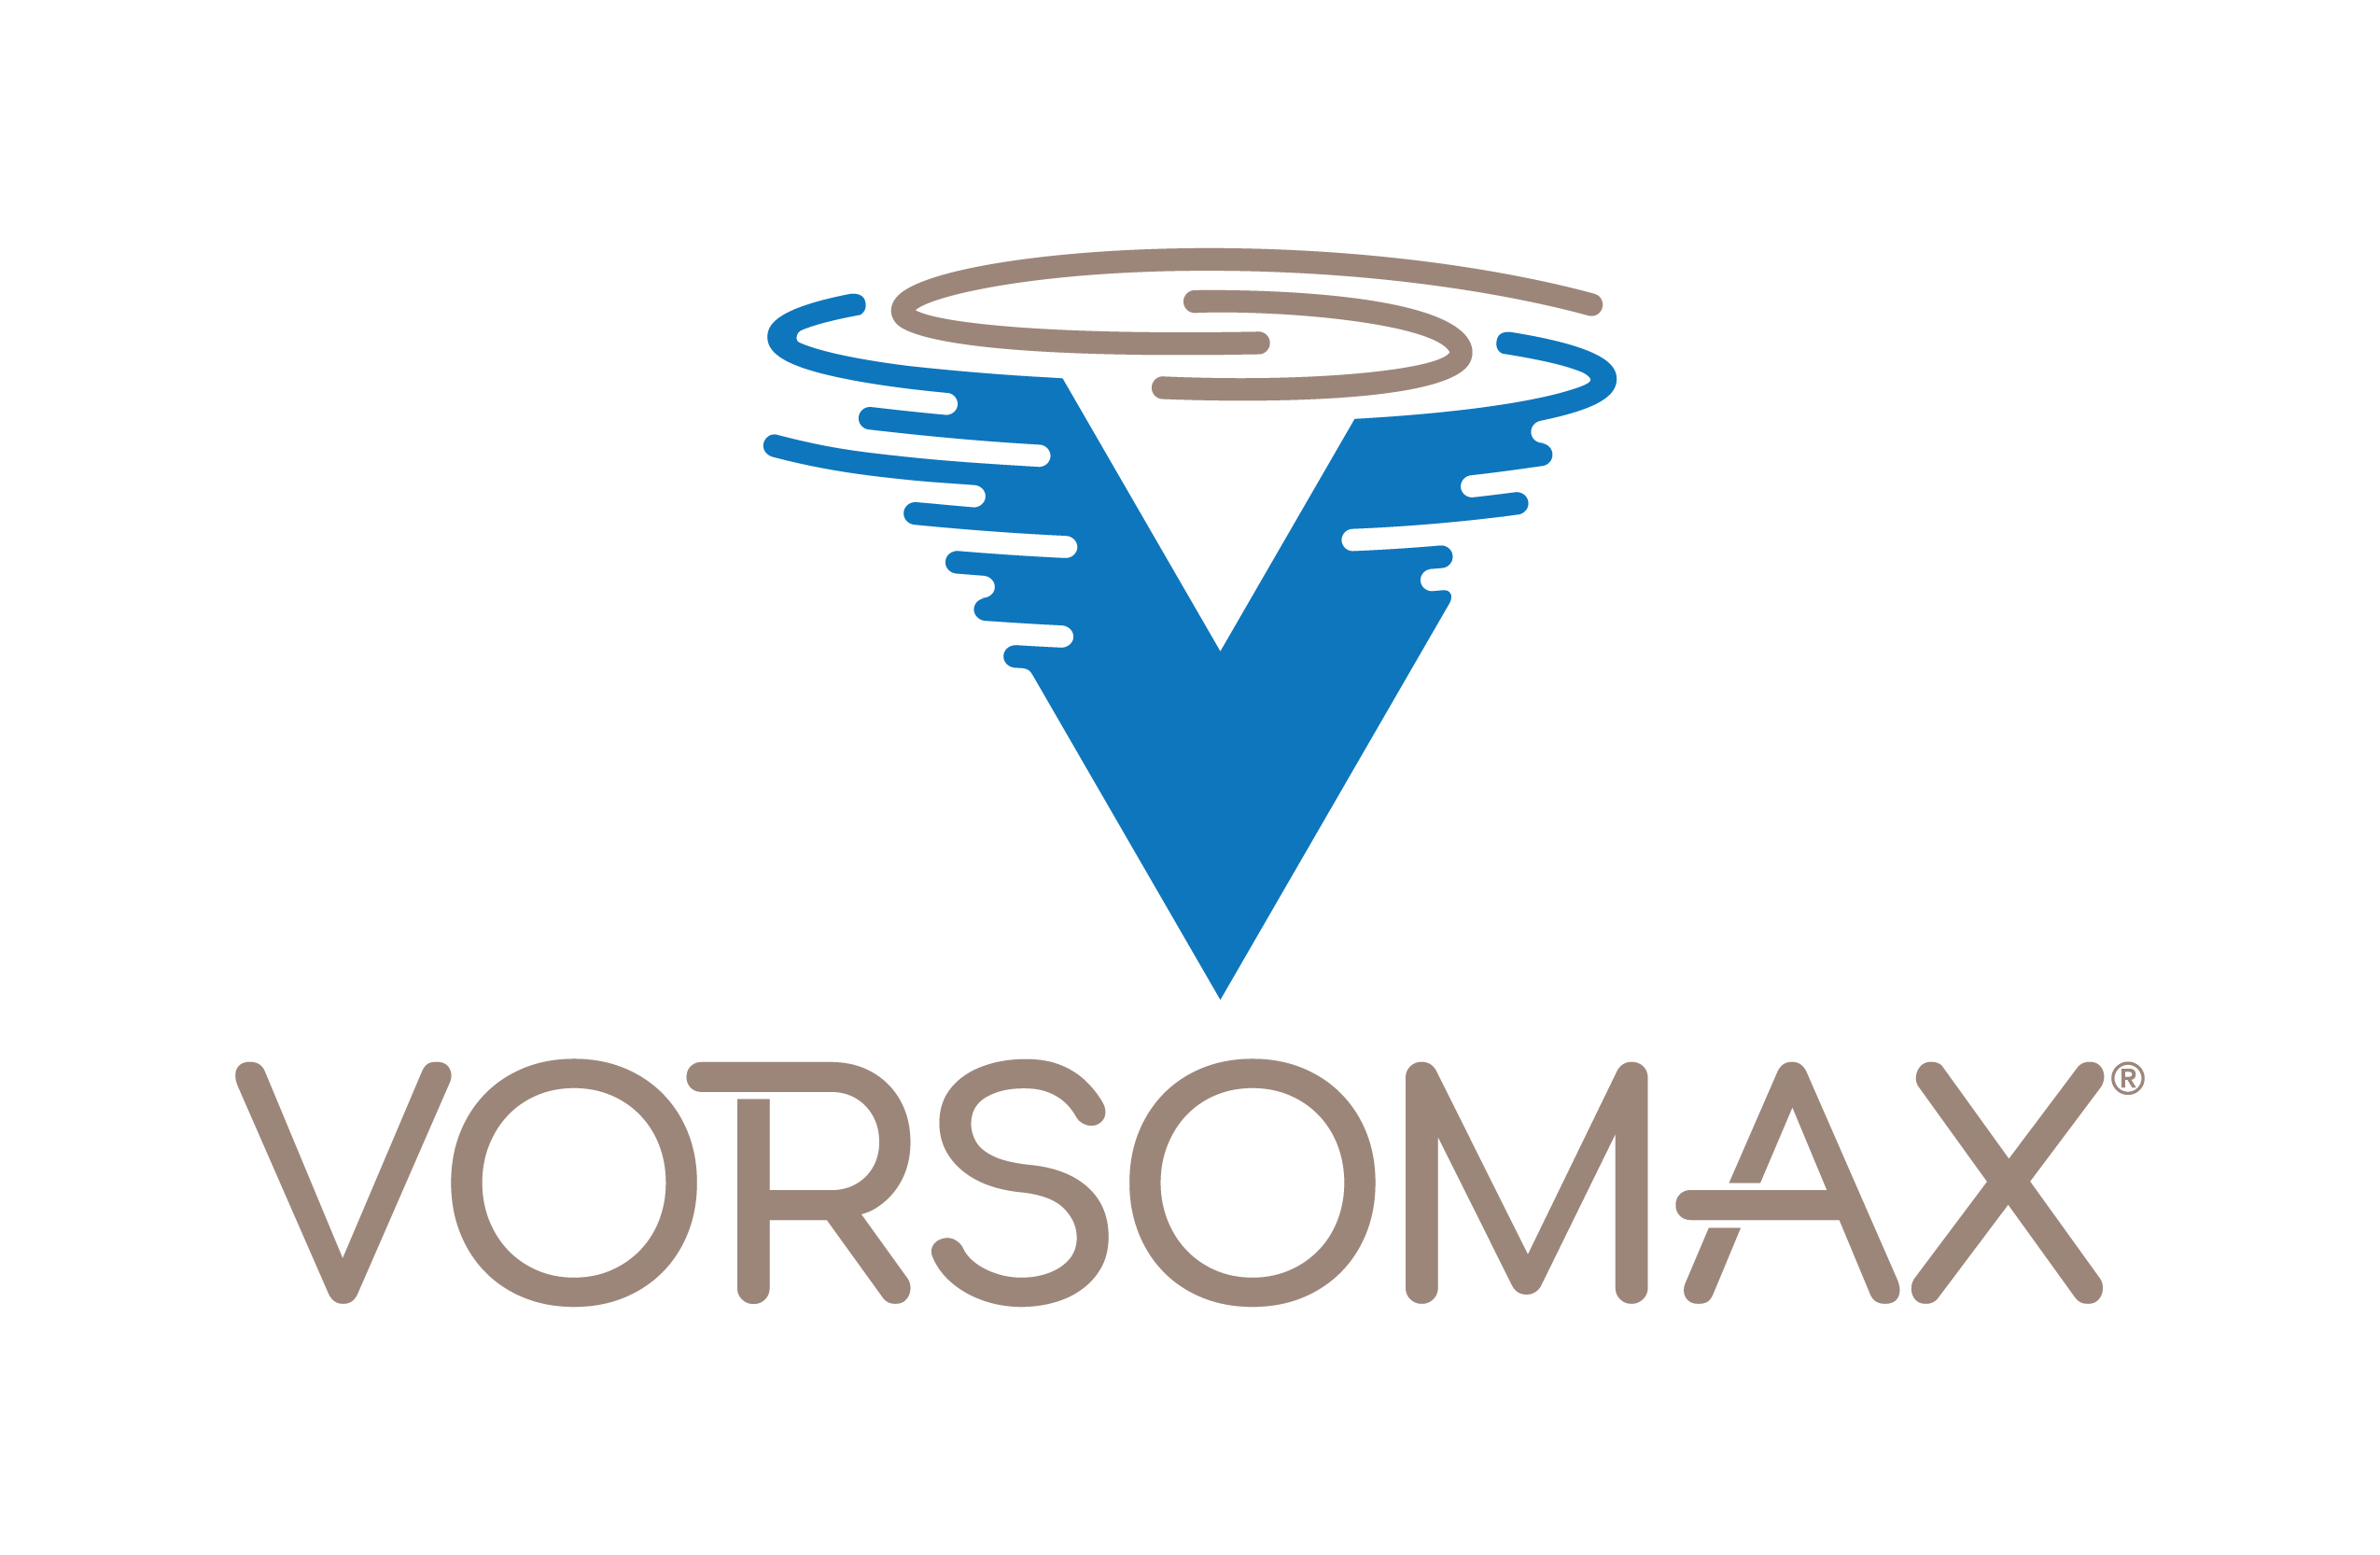 VORSOMAX logo (pending in U.S.)